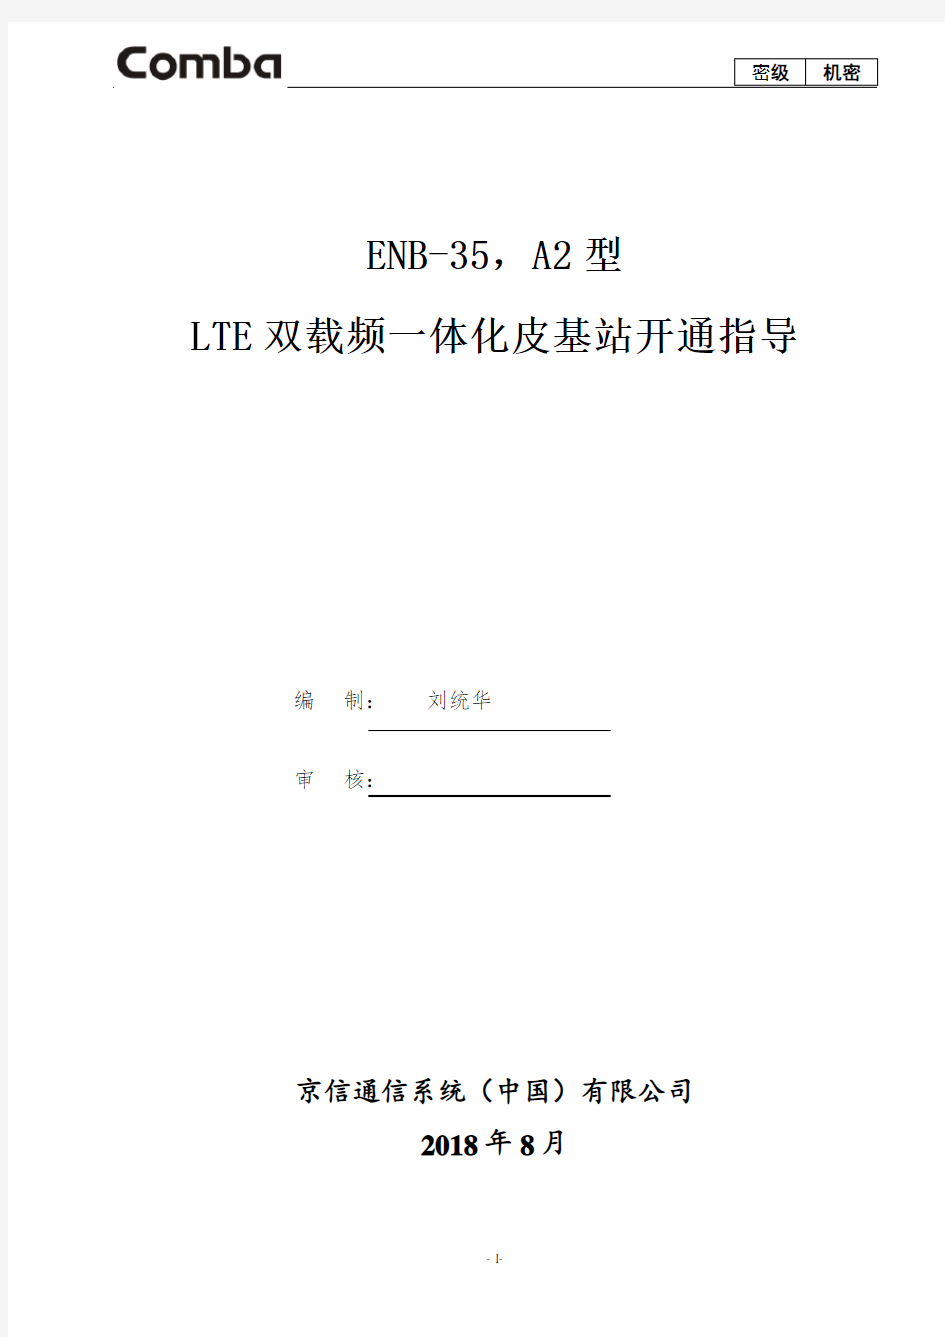 19.中国移动-TD-LTE双载频一体化皮基站开通指导(ENB-35,A 18年集采)